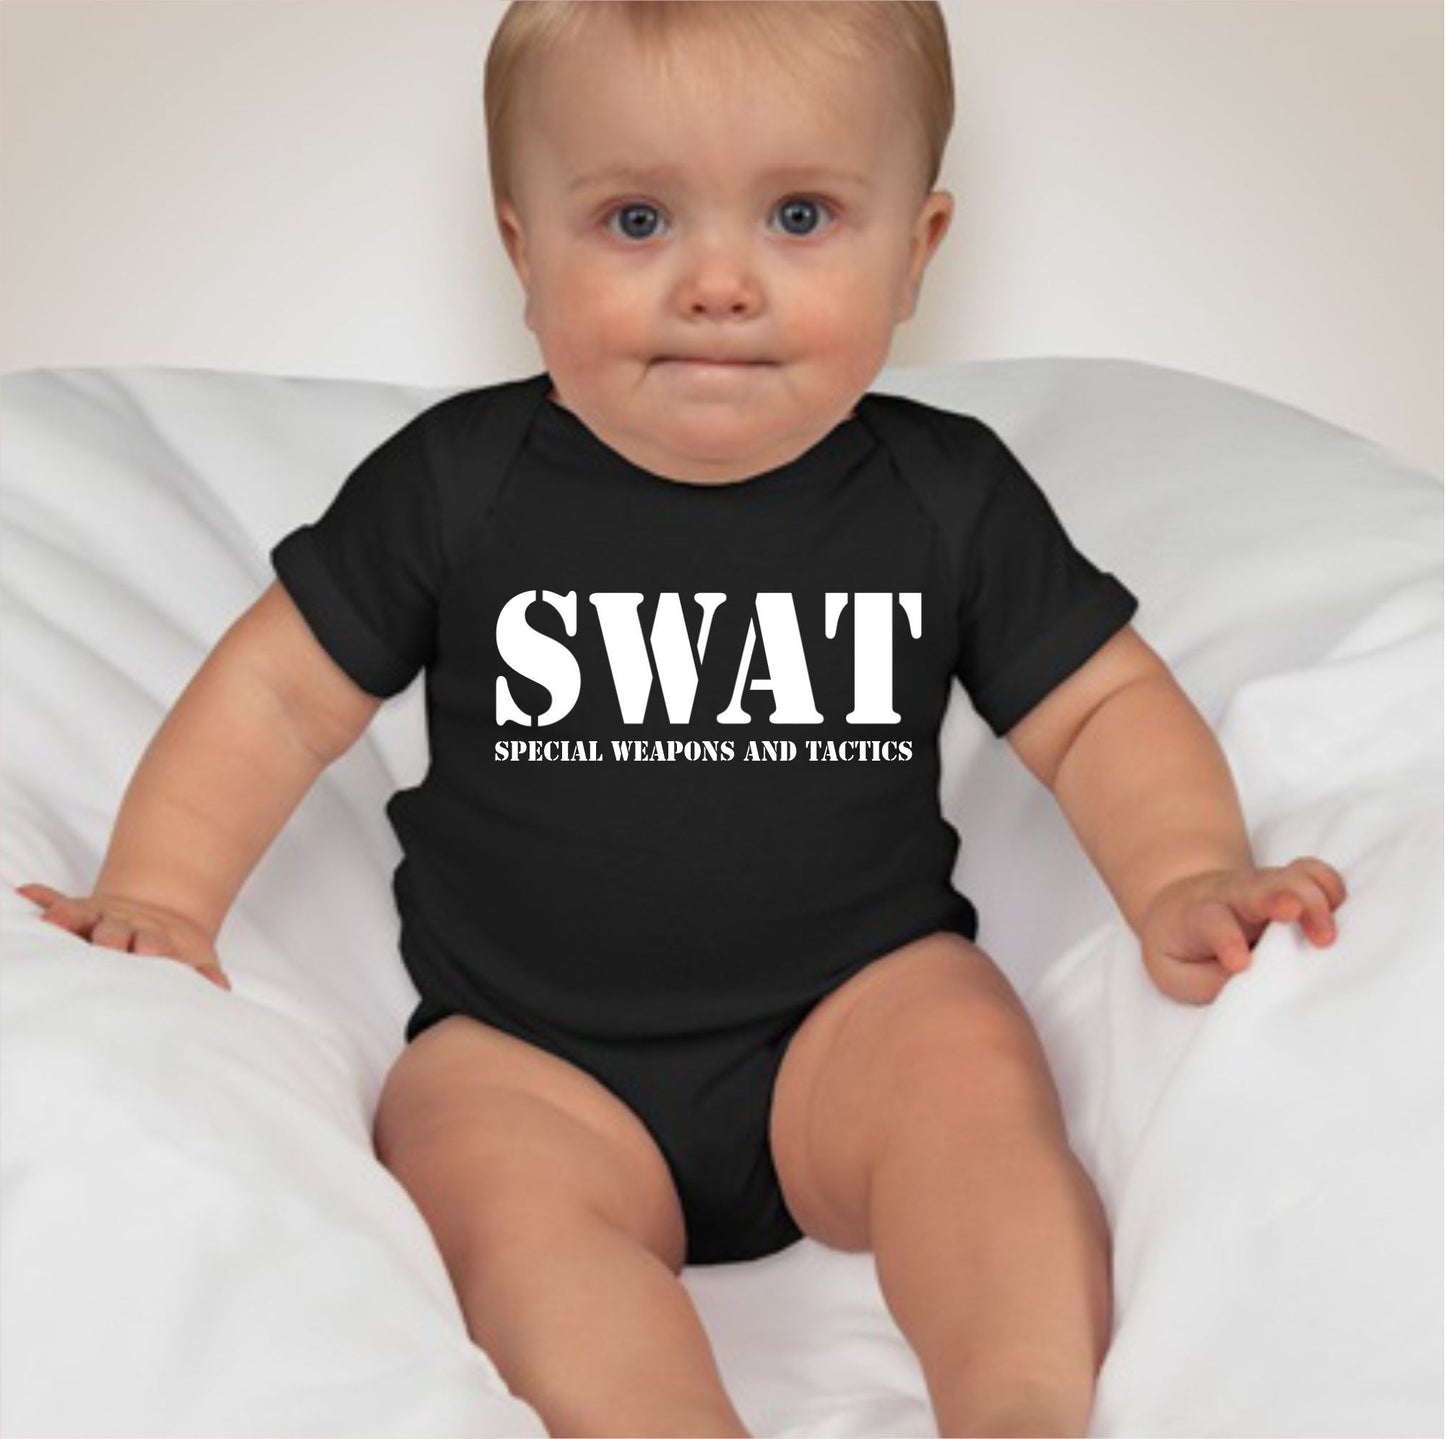 Baby Career Onesies with Free Name Back Print - SWAT